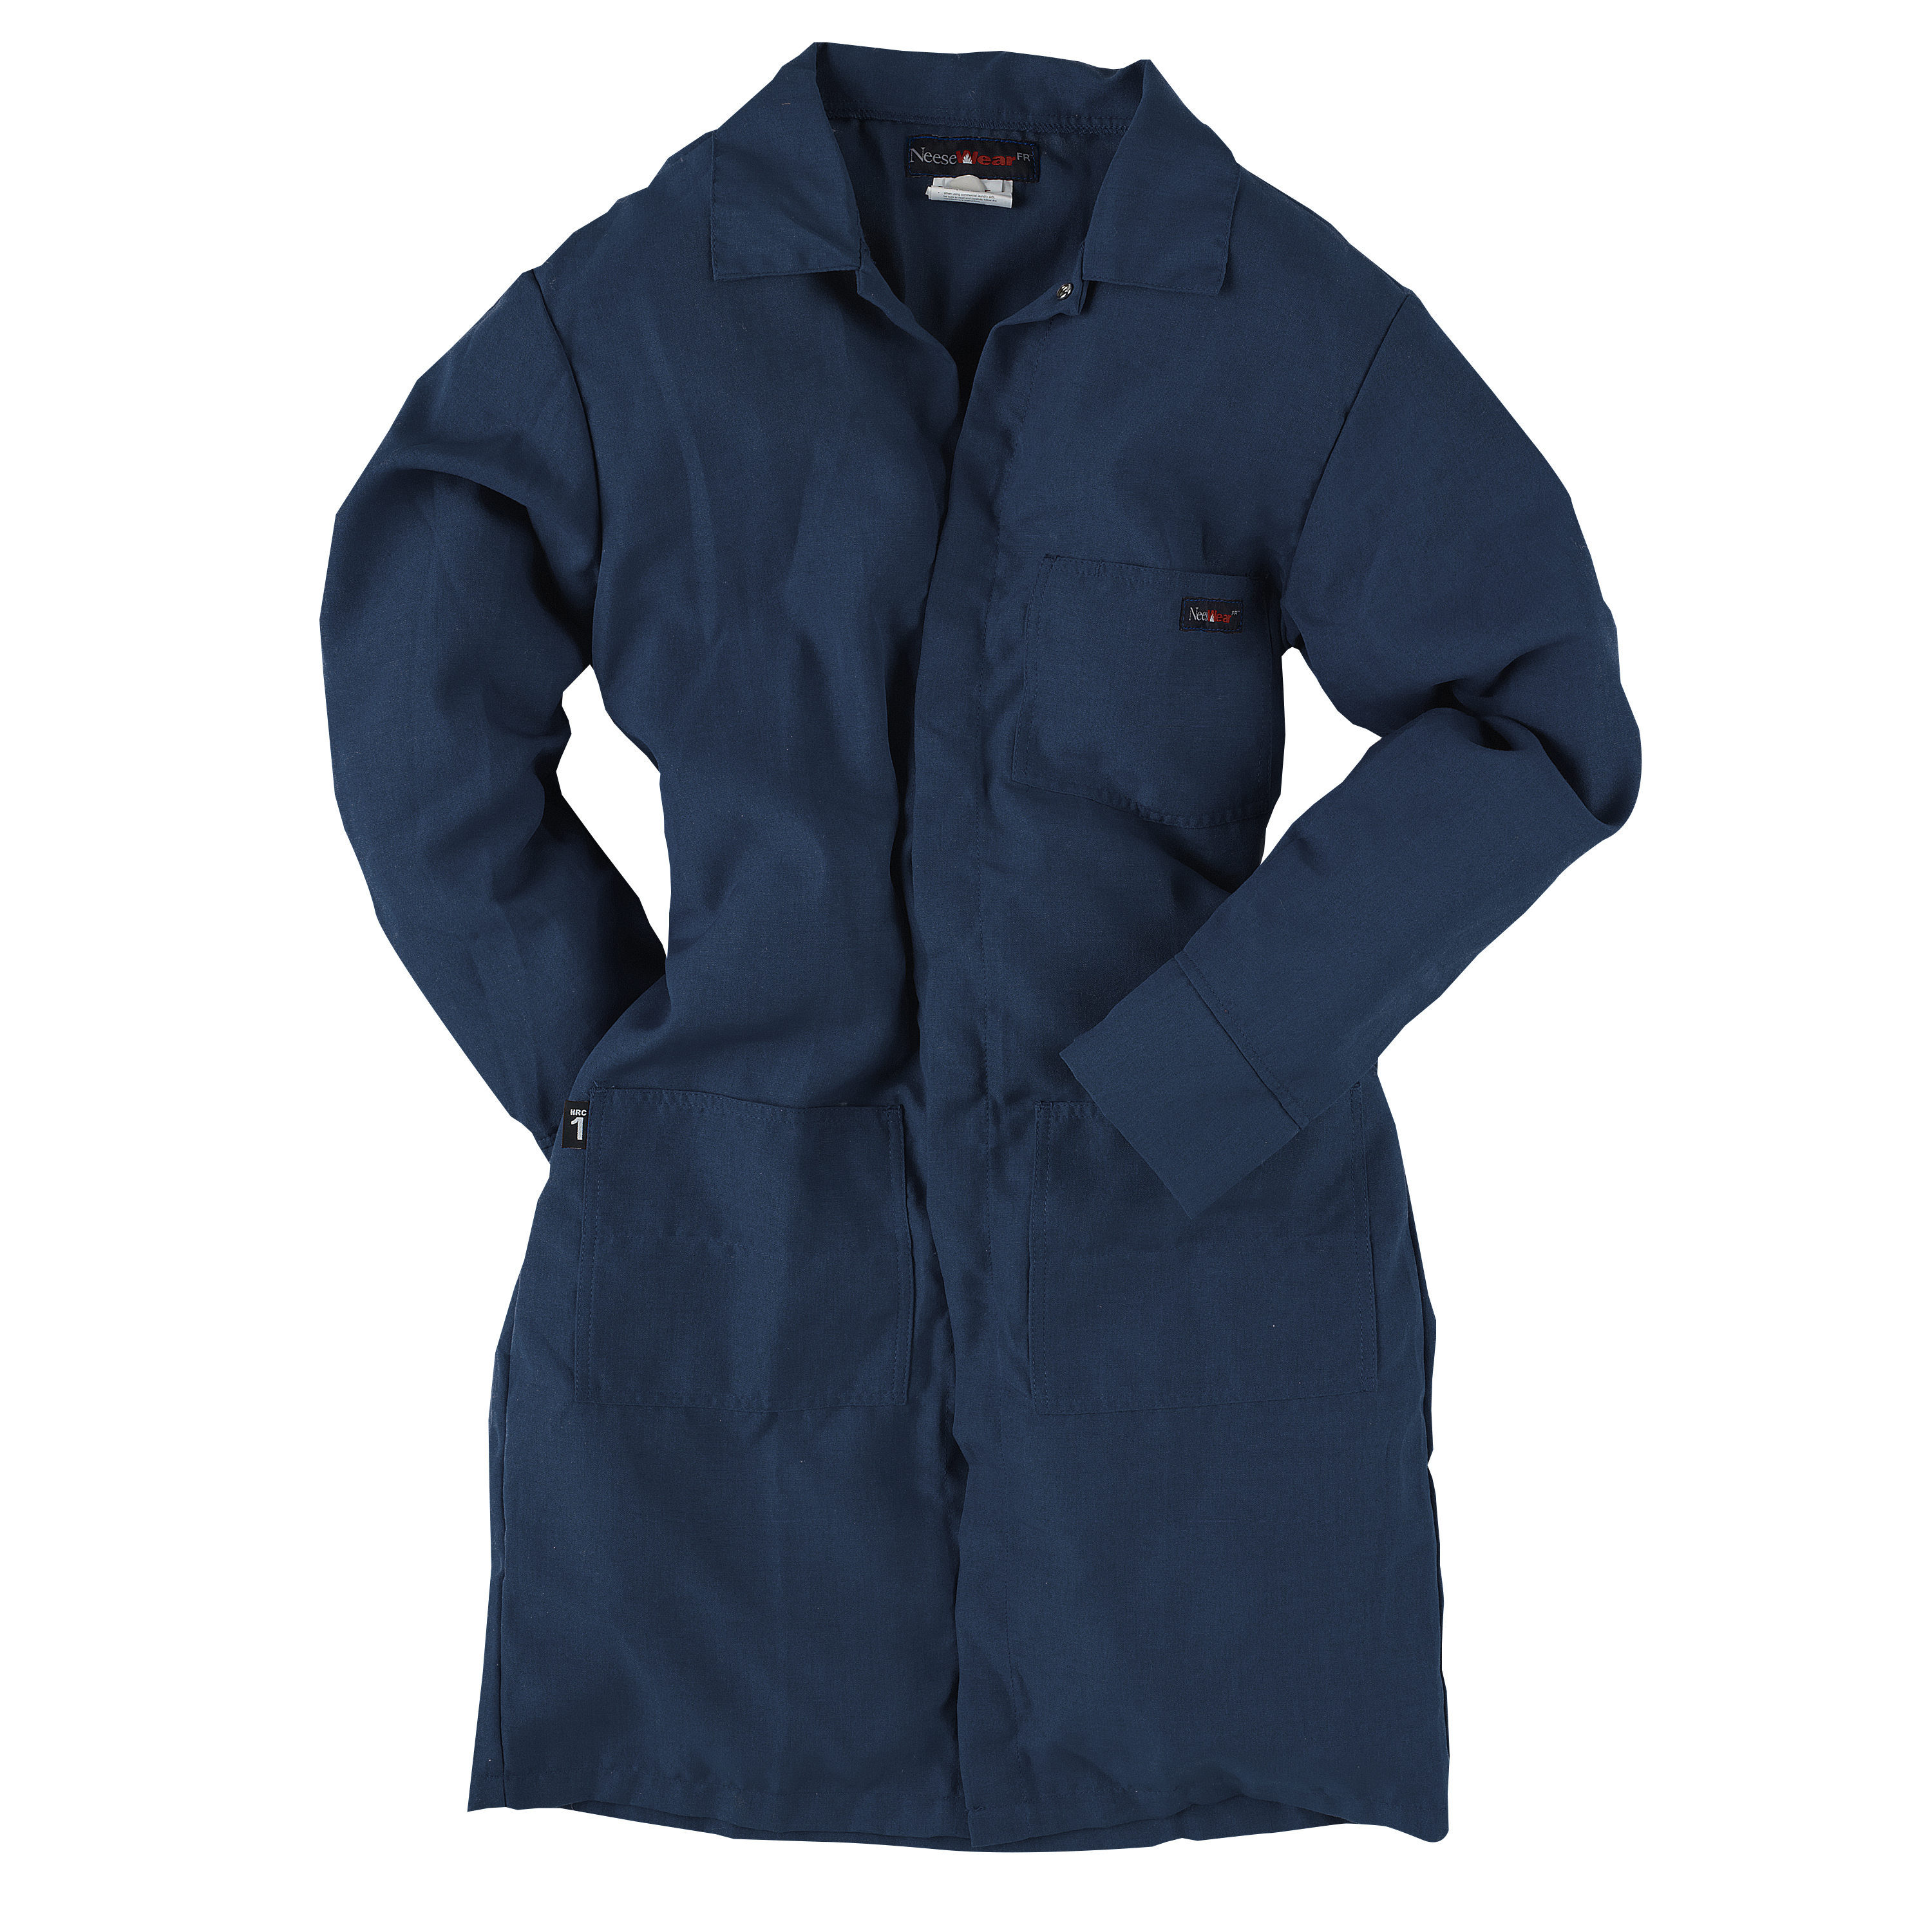 4.5 oz Nomex FR Lab Coat - Navy - Size L - Lab Coats